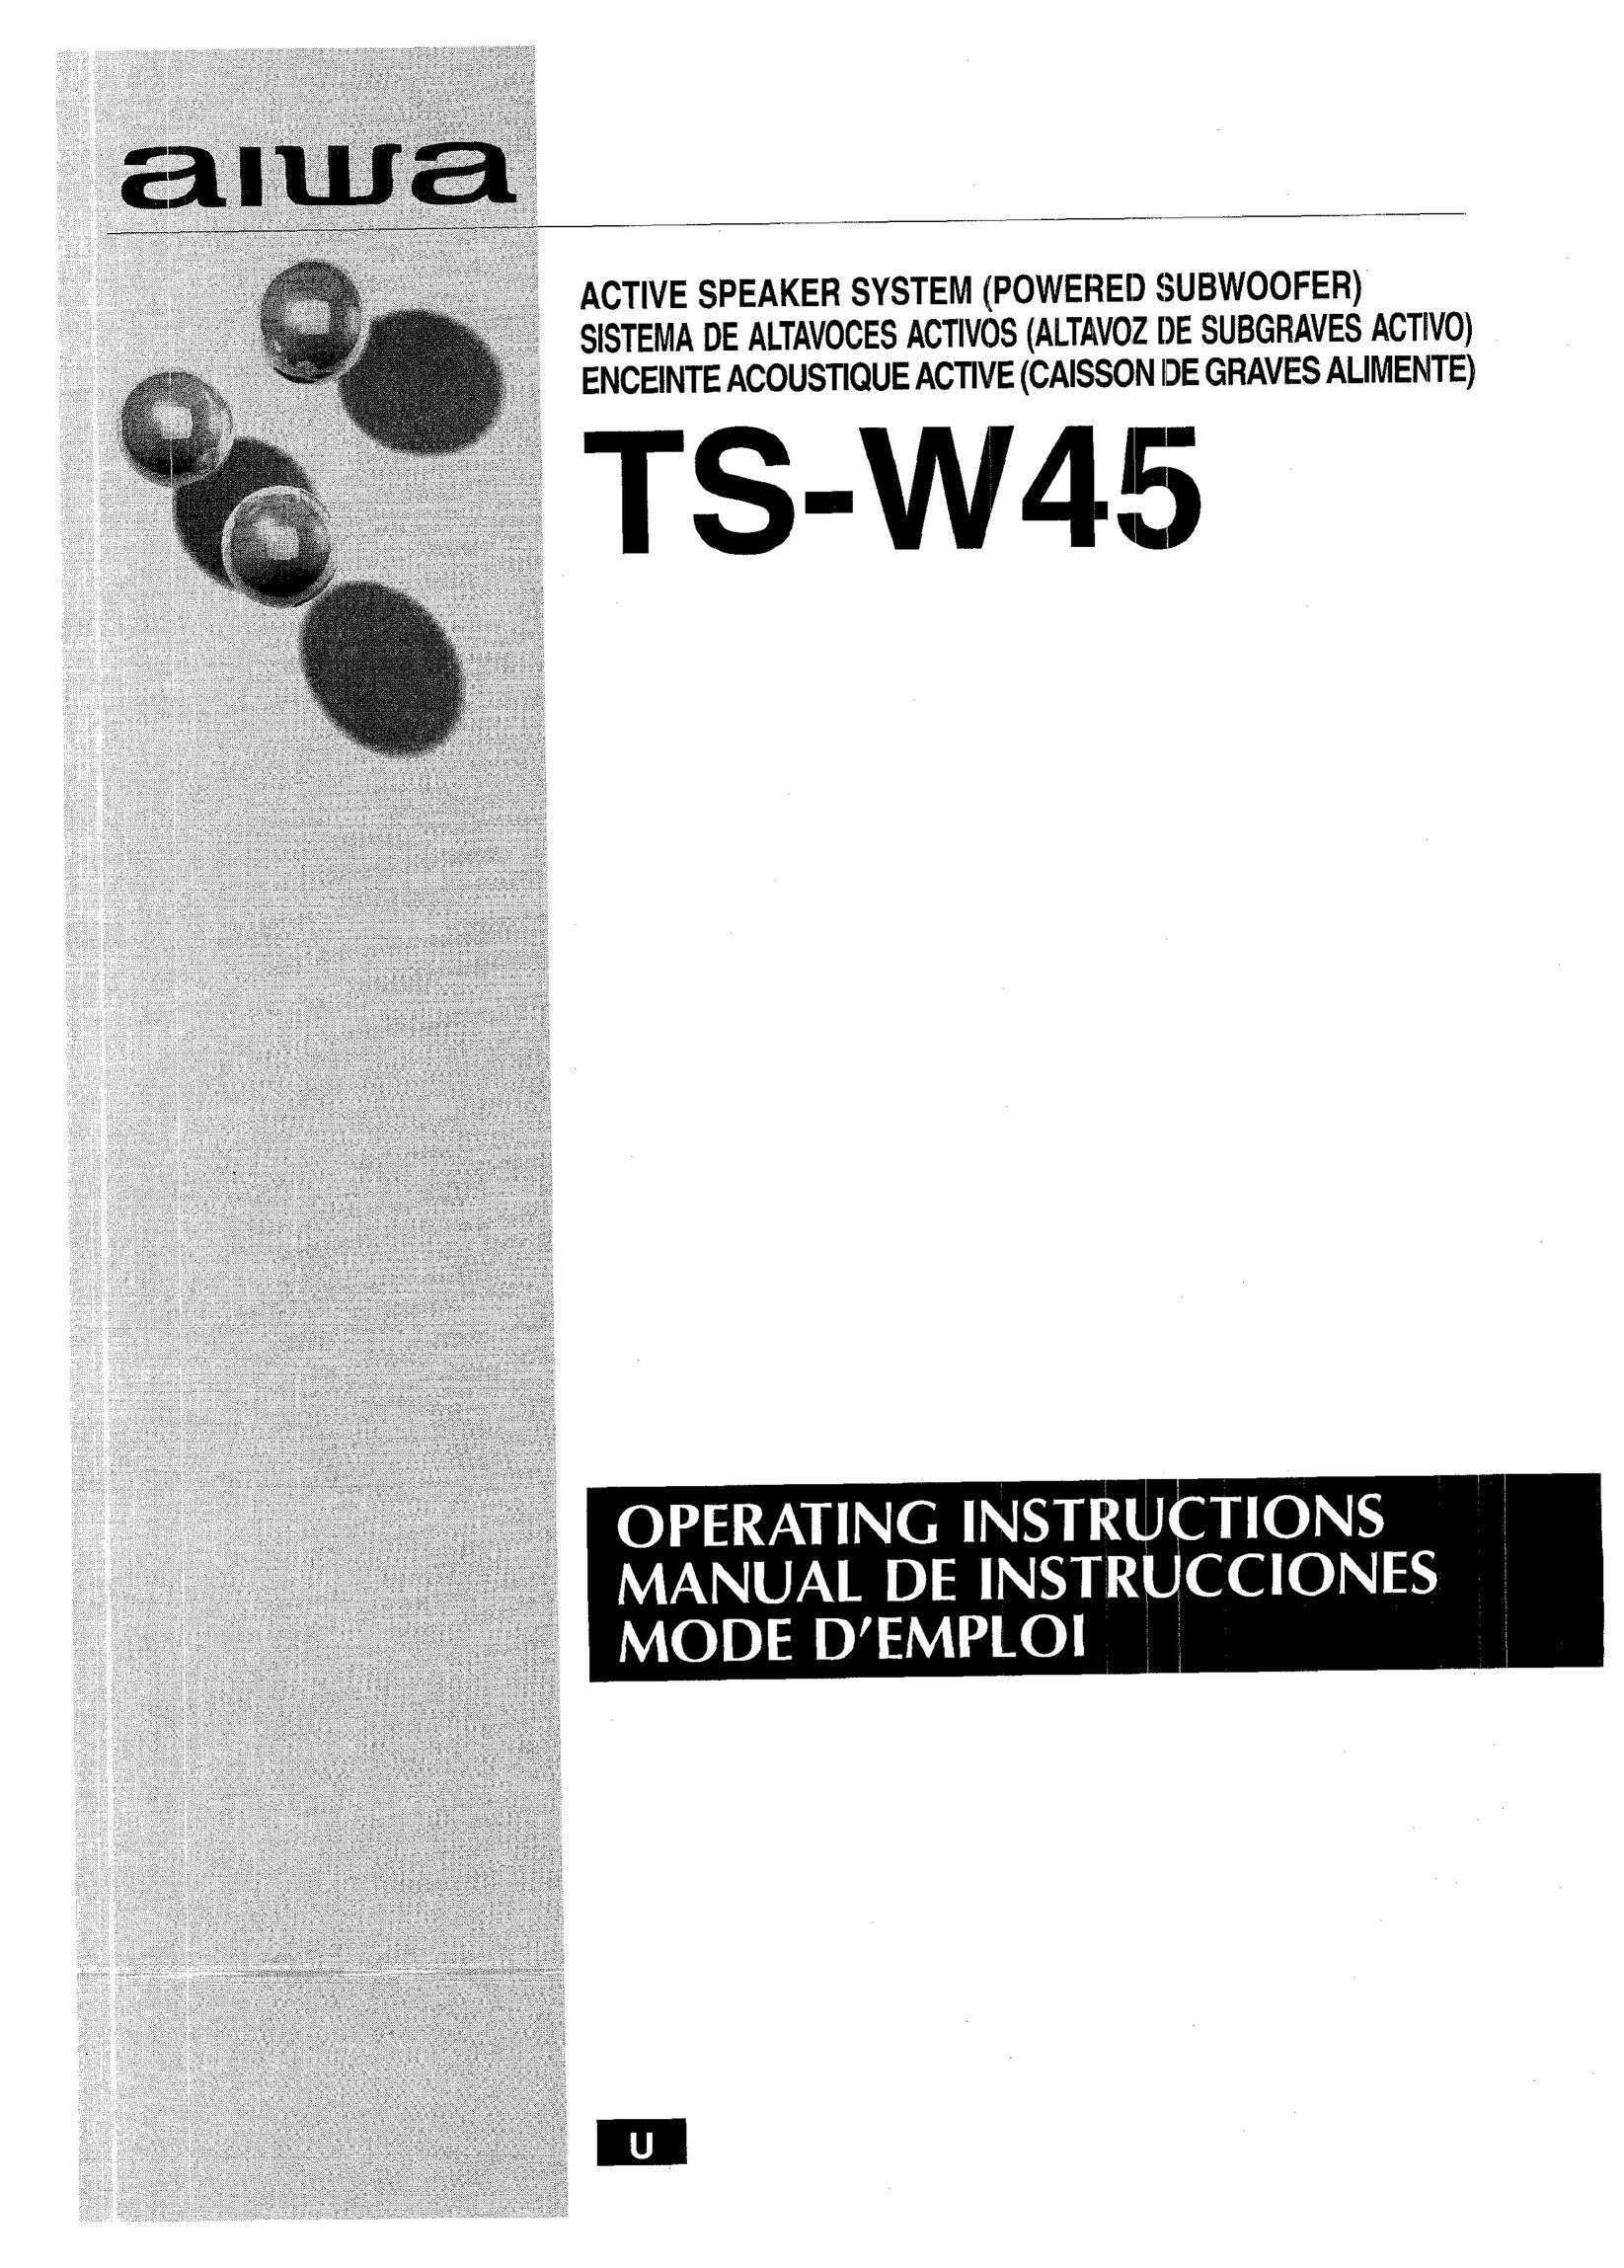 Aiwa TS-W45 Speaker System User Manual